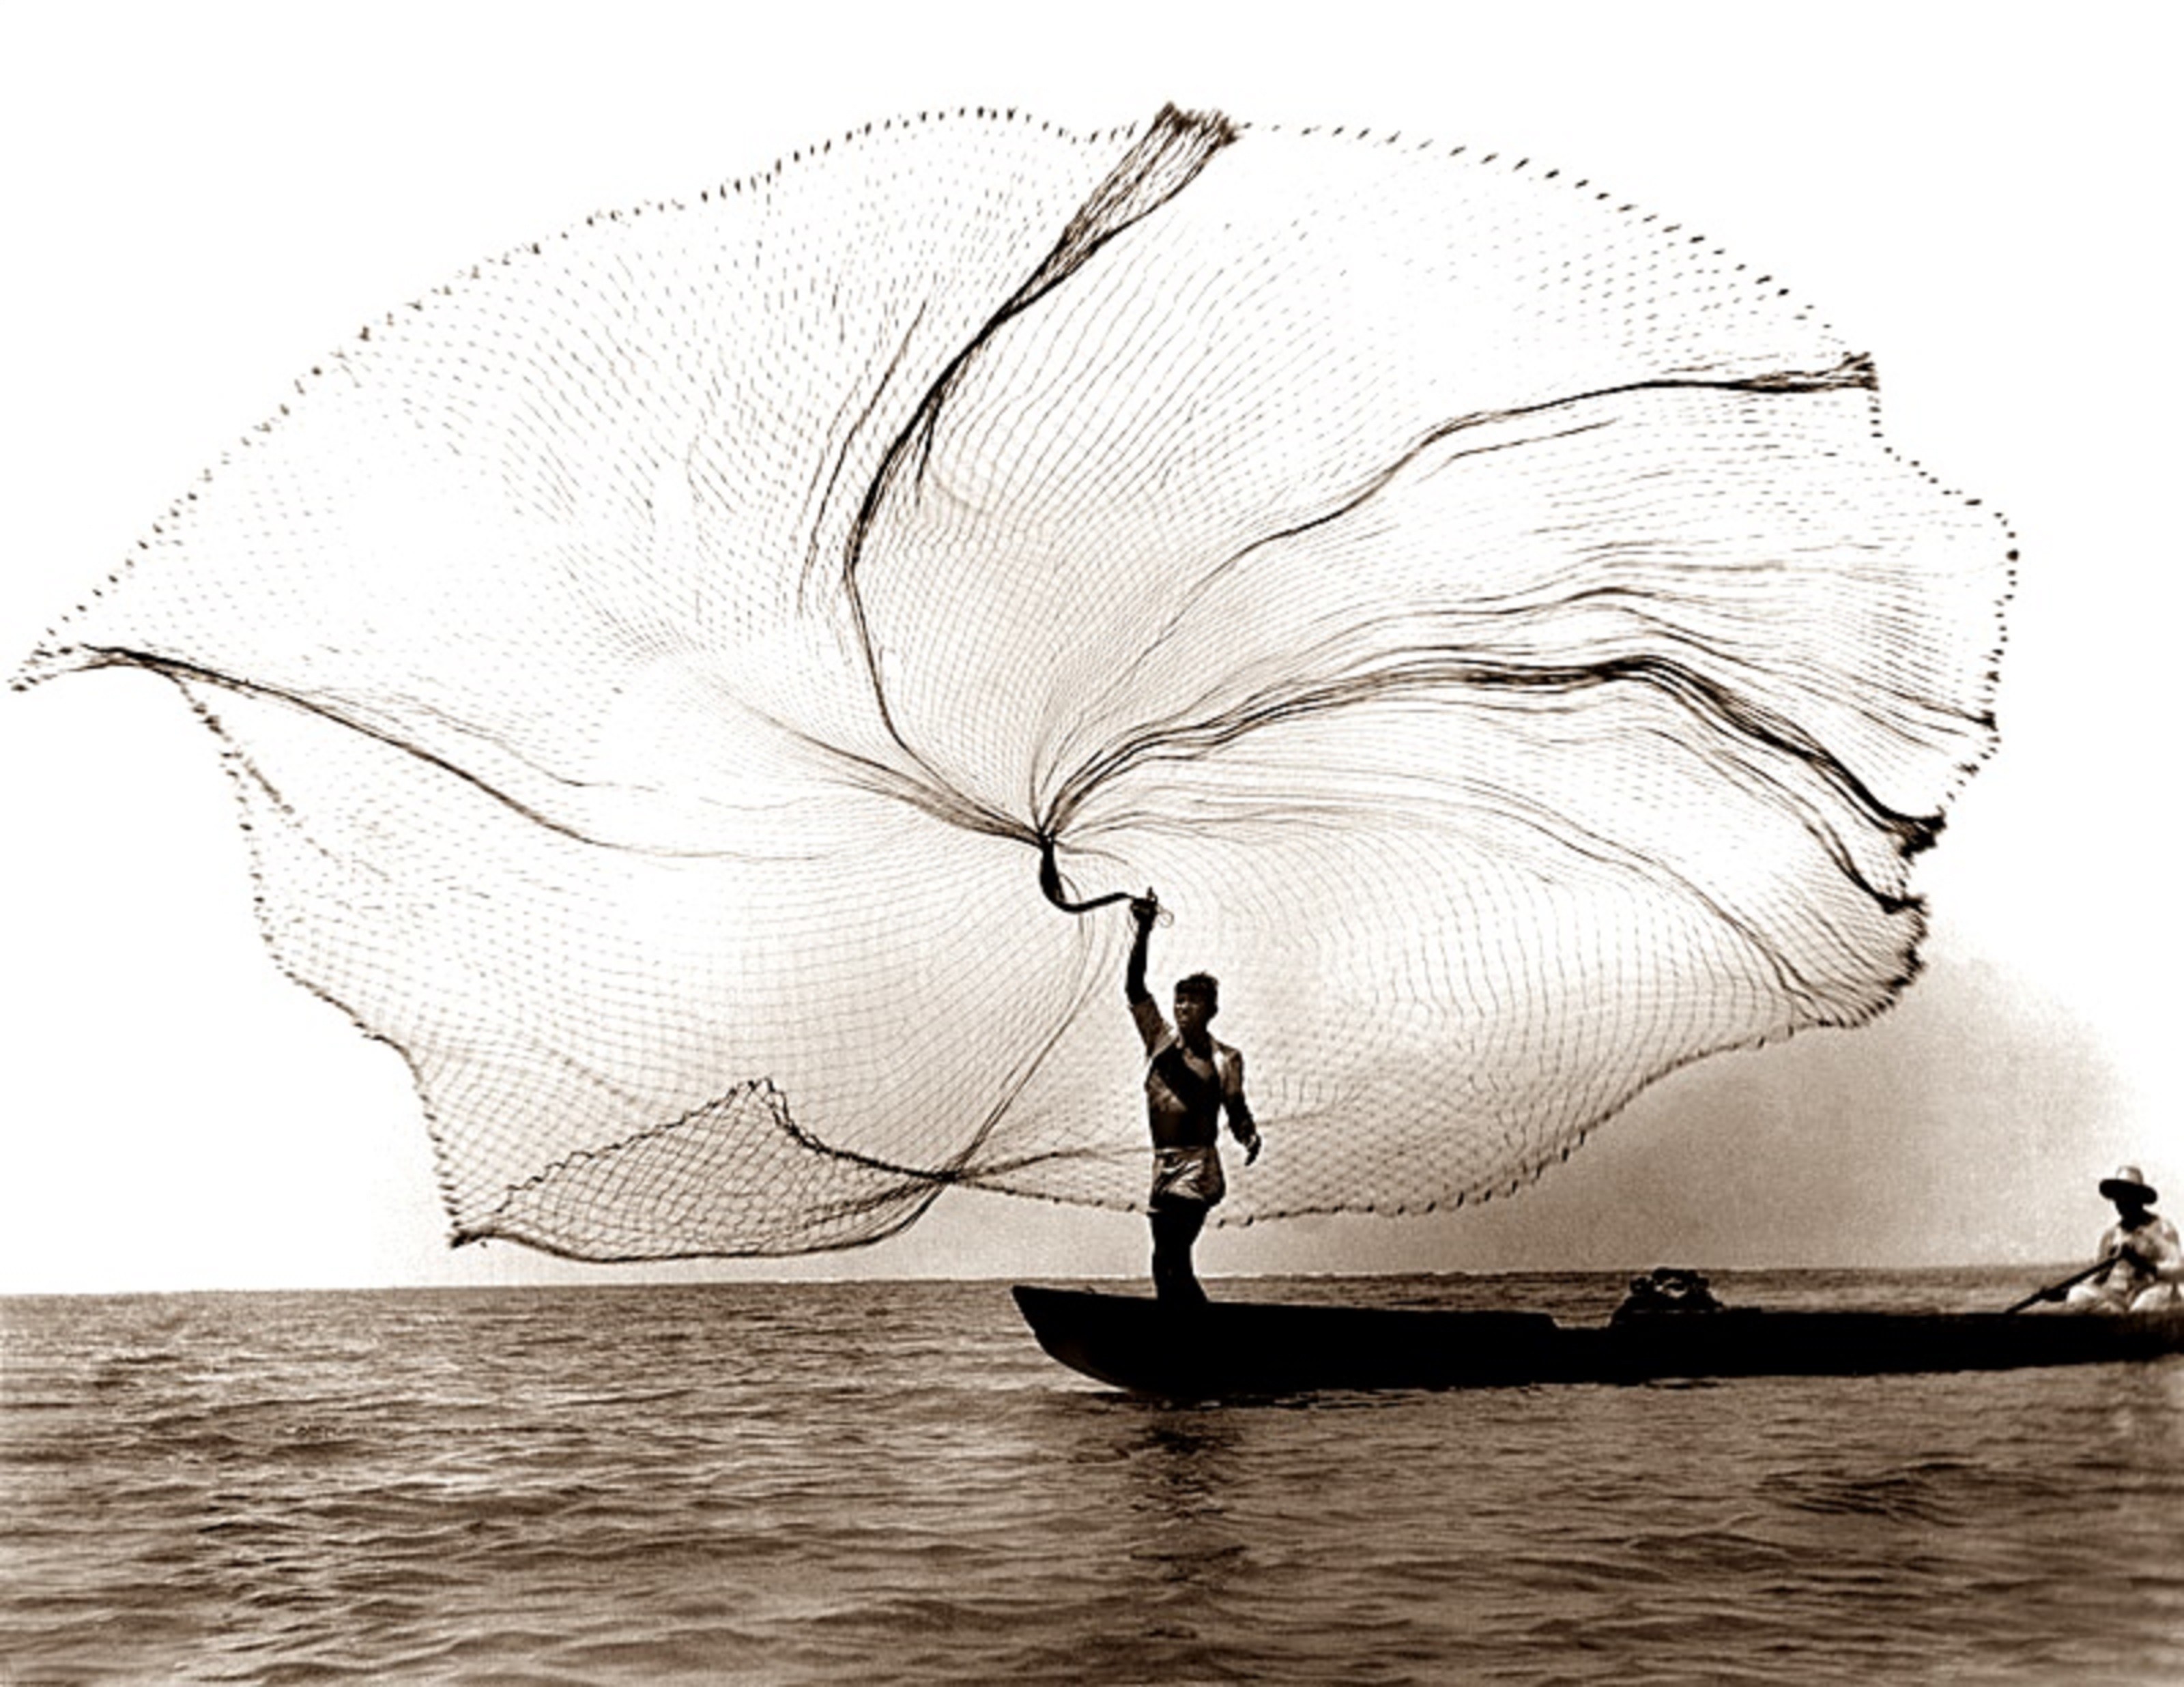 Рыбак. Магдалена, Колумбия, 1939. Фотограф Лео Матиз